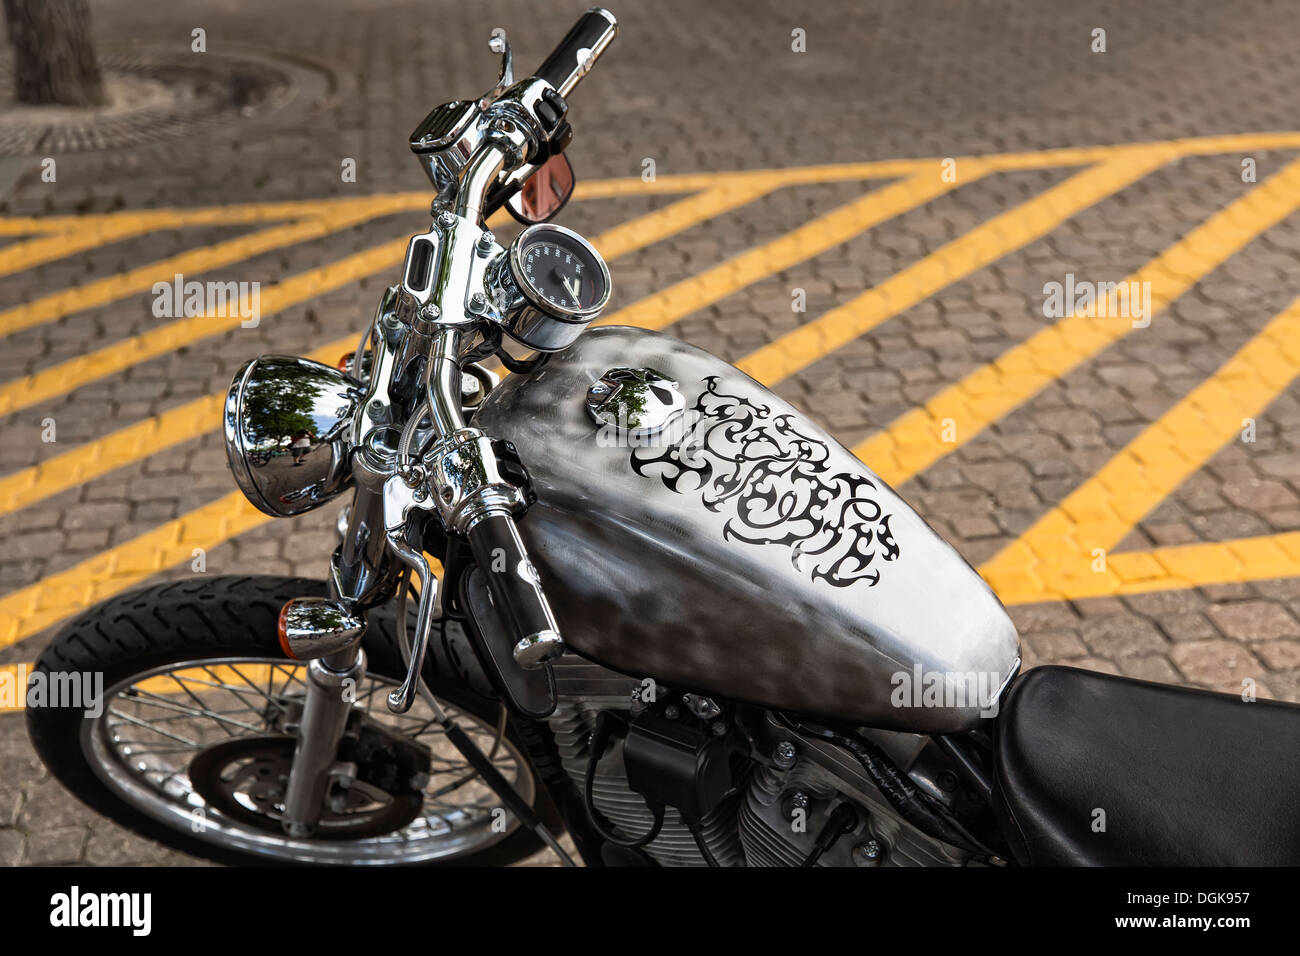 Customized Harley Davidson Motorcycle. Stock Photo